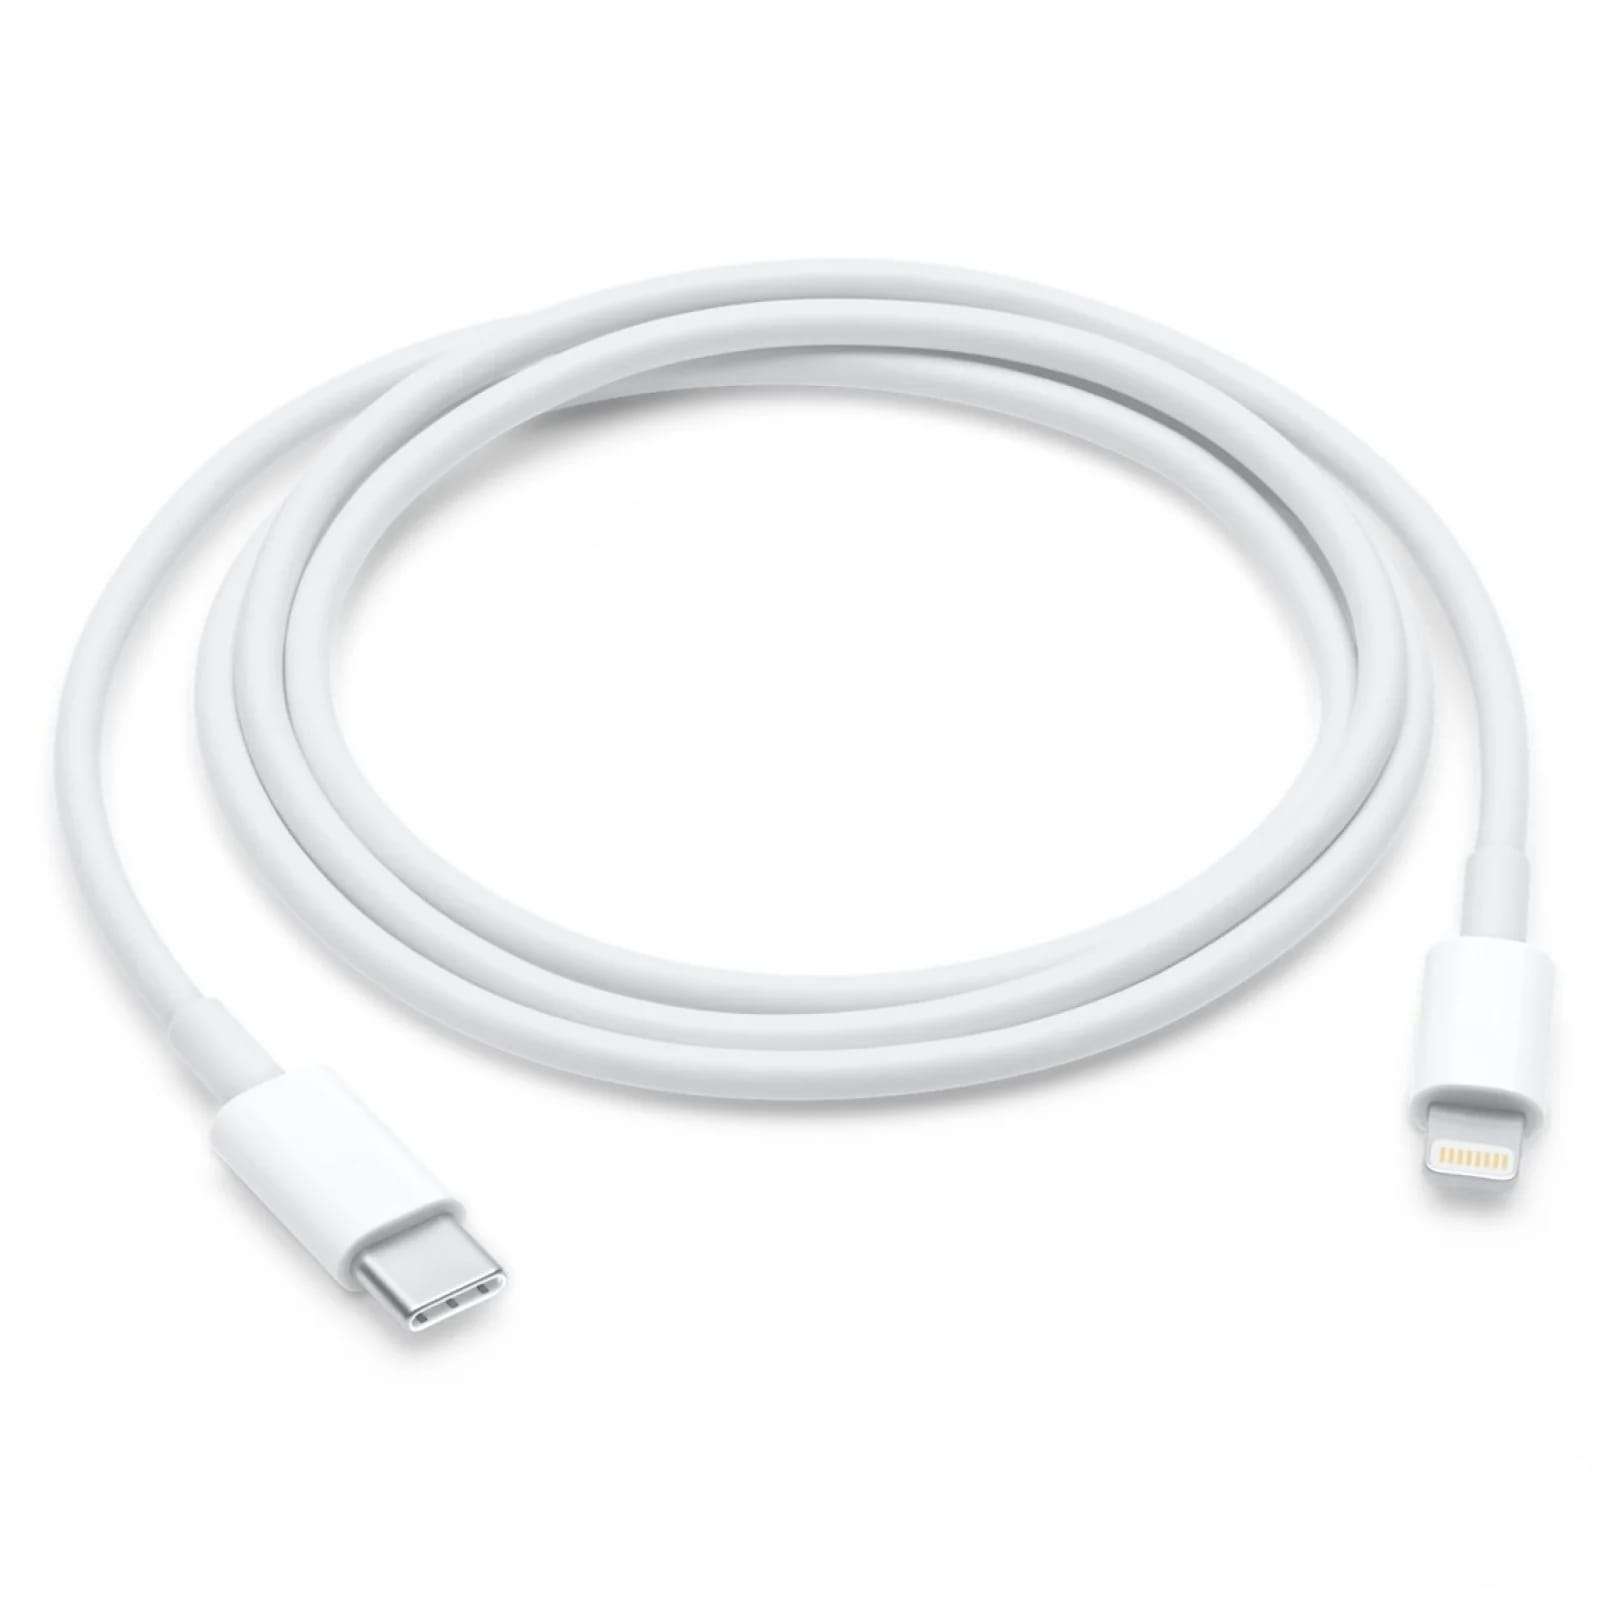 Originalt Apple Lightning kabel 2m